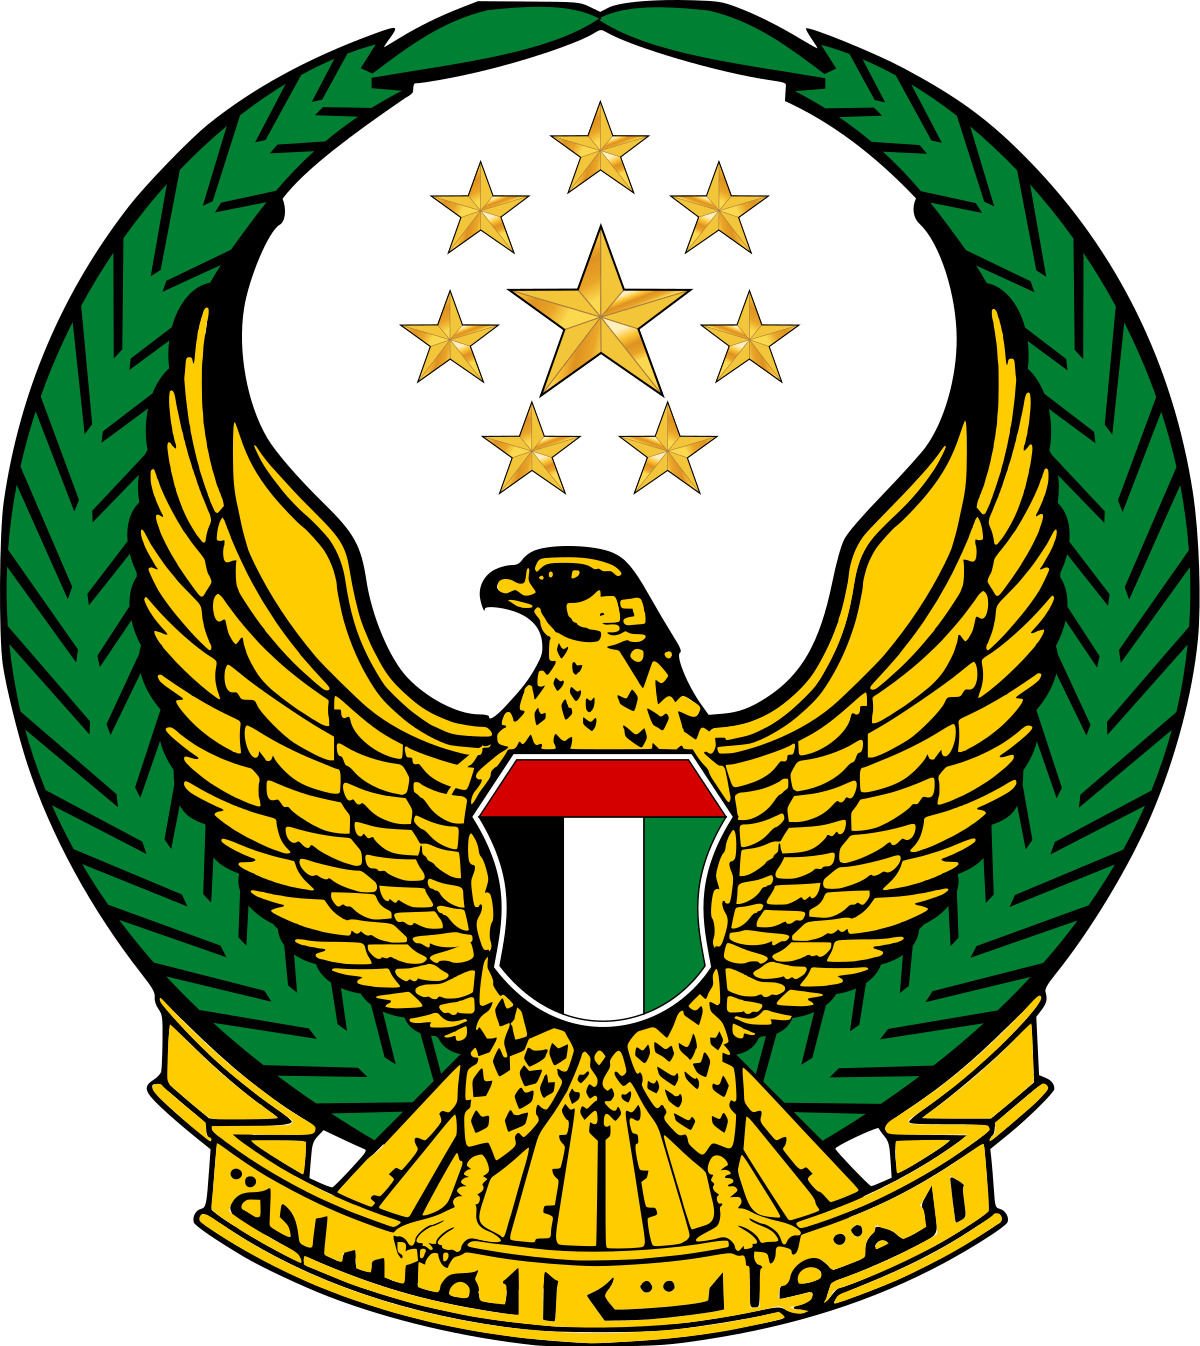 Jordan Army Logo - United Arab Emirates Armed Forces